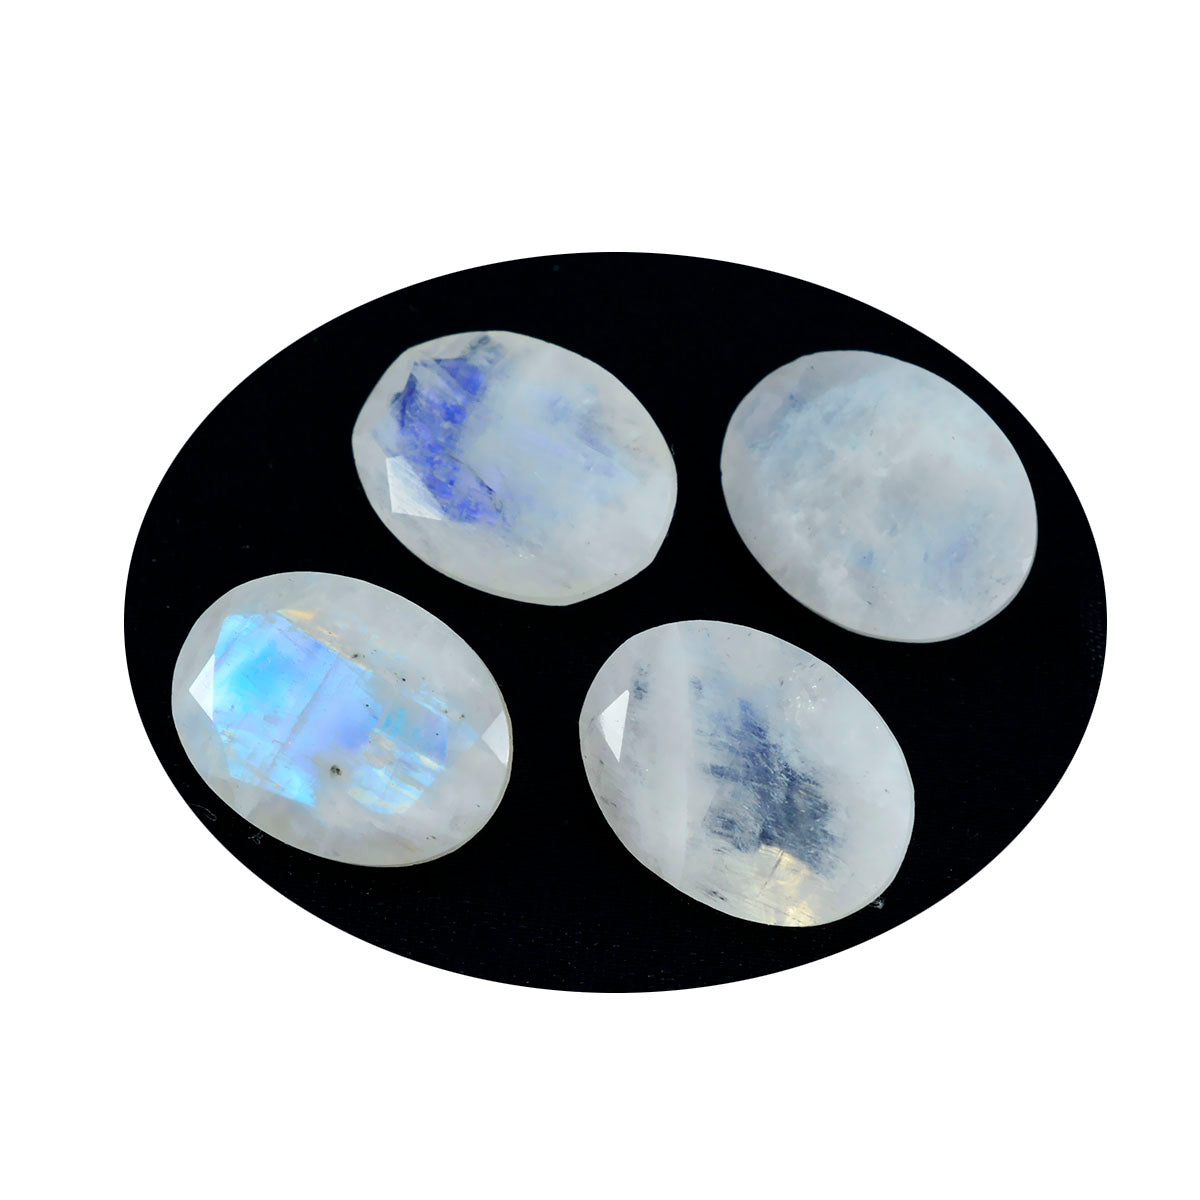 Riyogems 1 Stück weißer Regenbogen-Mondstein, facettiert, 8 x 10 mm, ovale Form, A1-Qualitätsstein